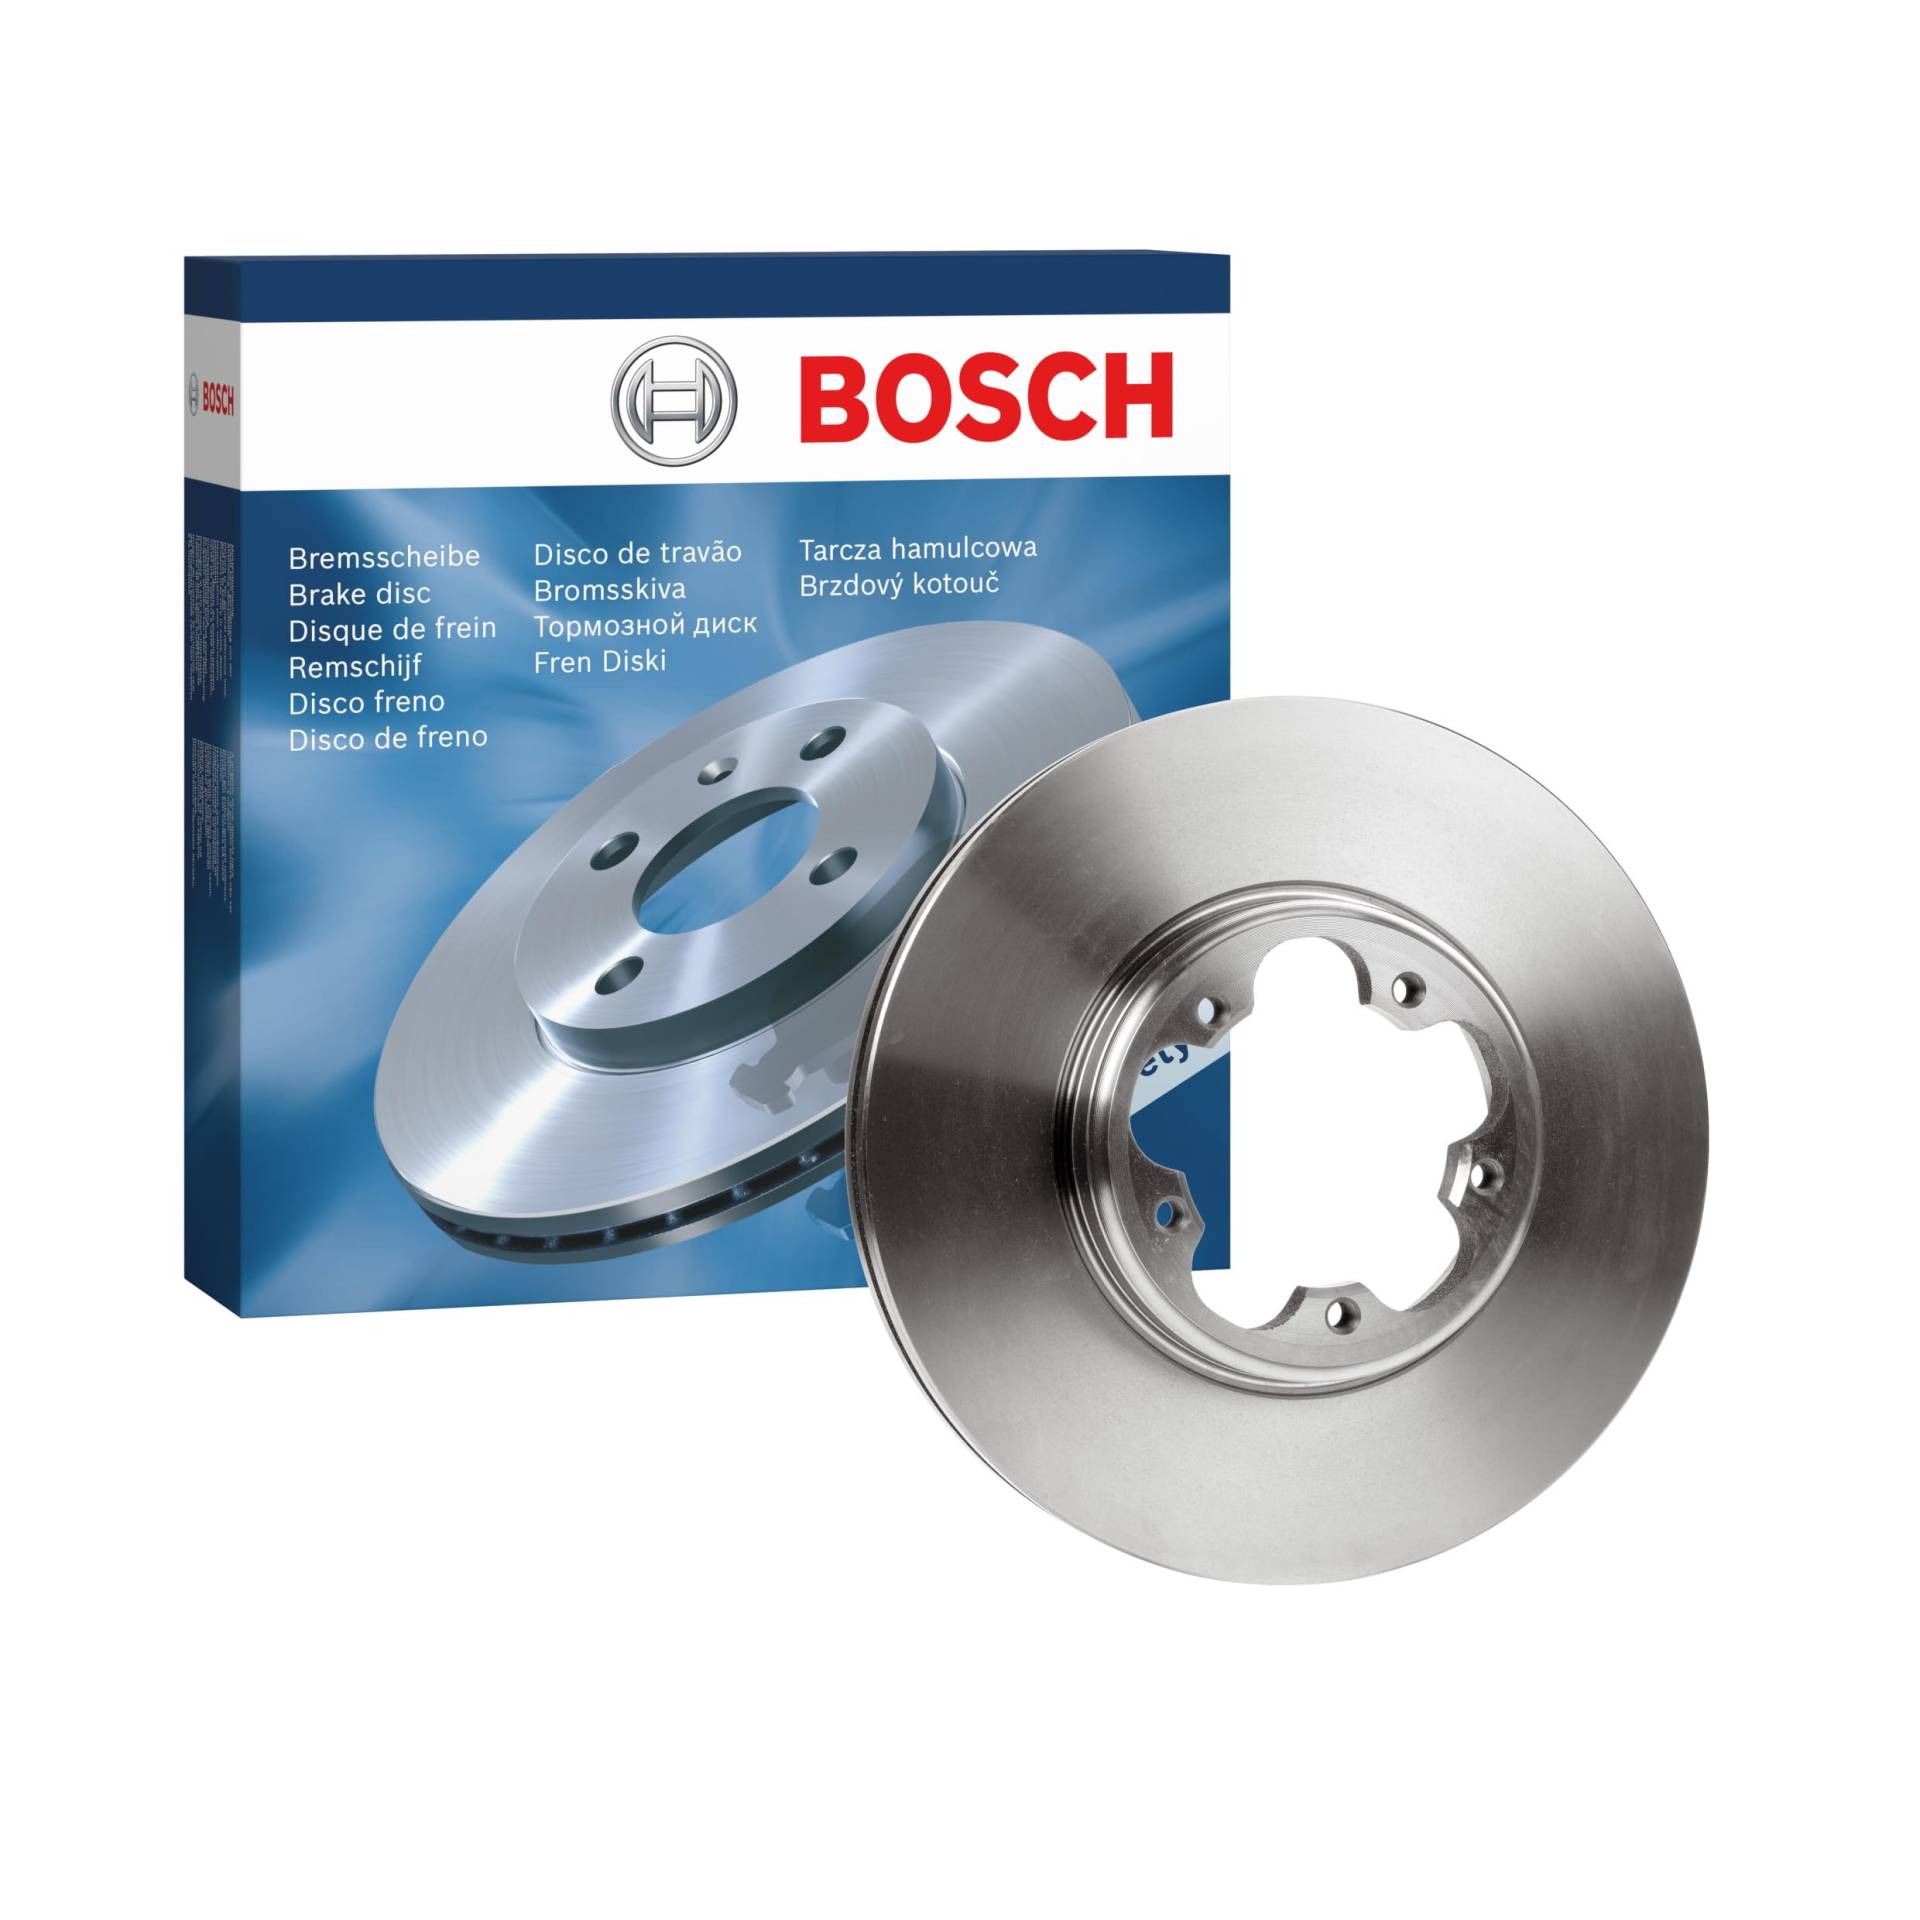 Bosch BD2121 Bremsscheiben - Vorderachse - ECE-R90 Zertifizierung - eine Bremsscheibe von Bosch Automotive